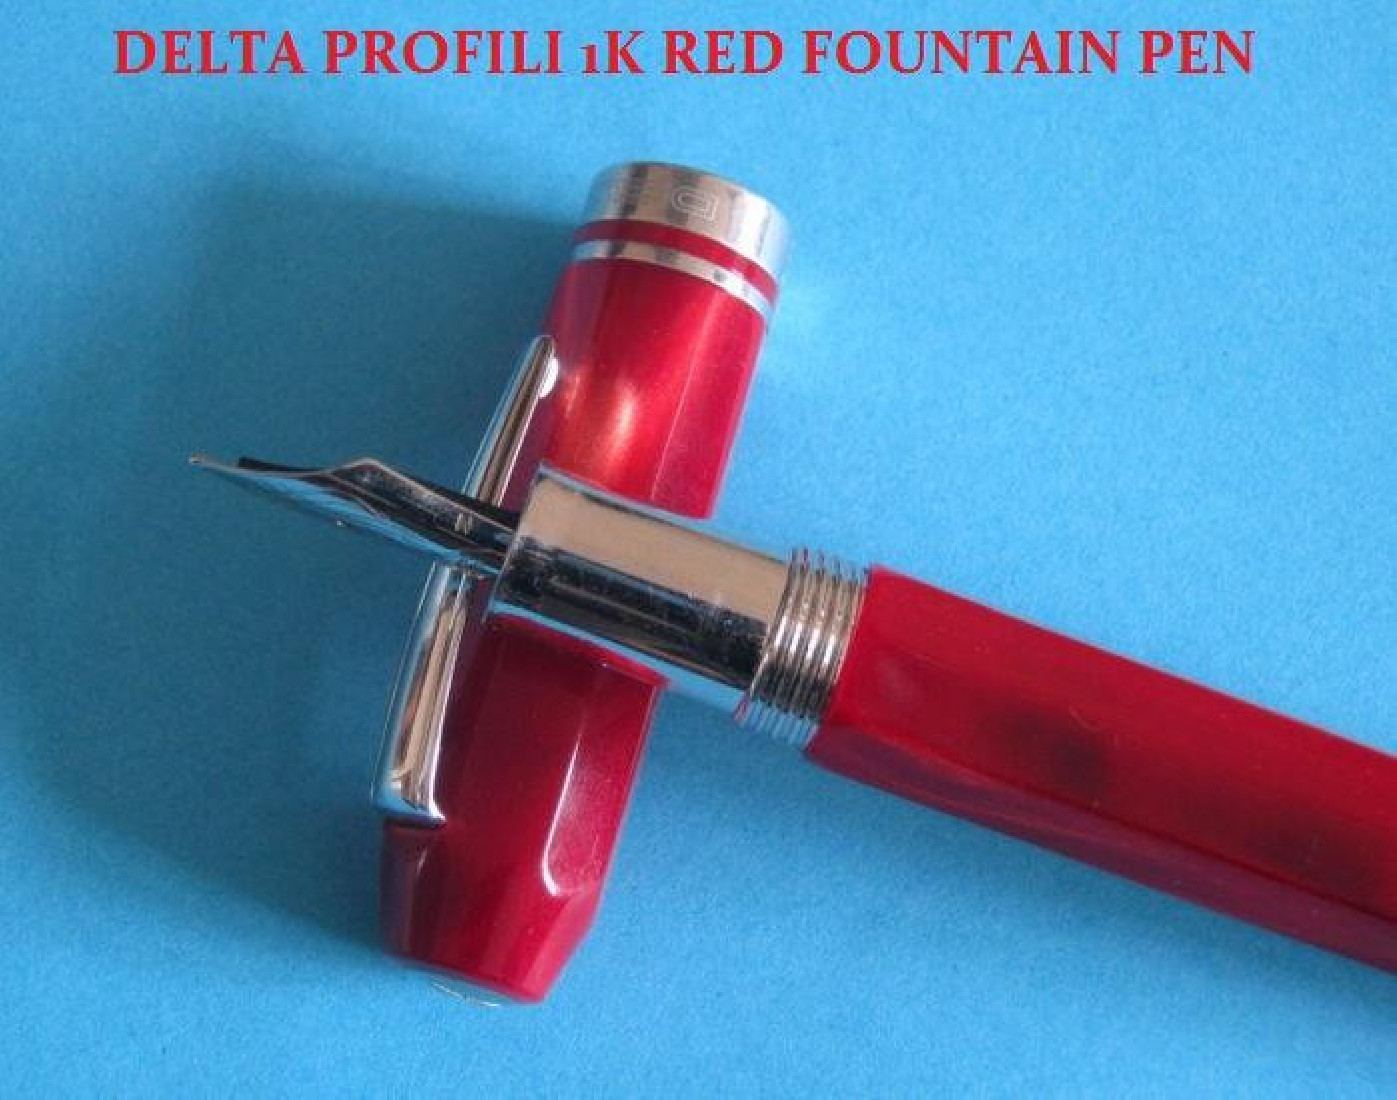 FOUNTAIN PEN PROFILI 1K RED DELTA